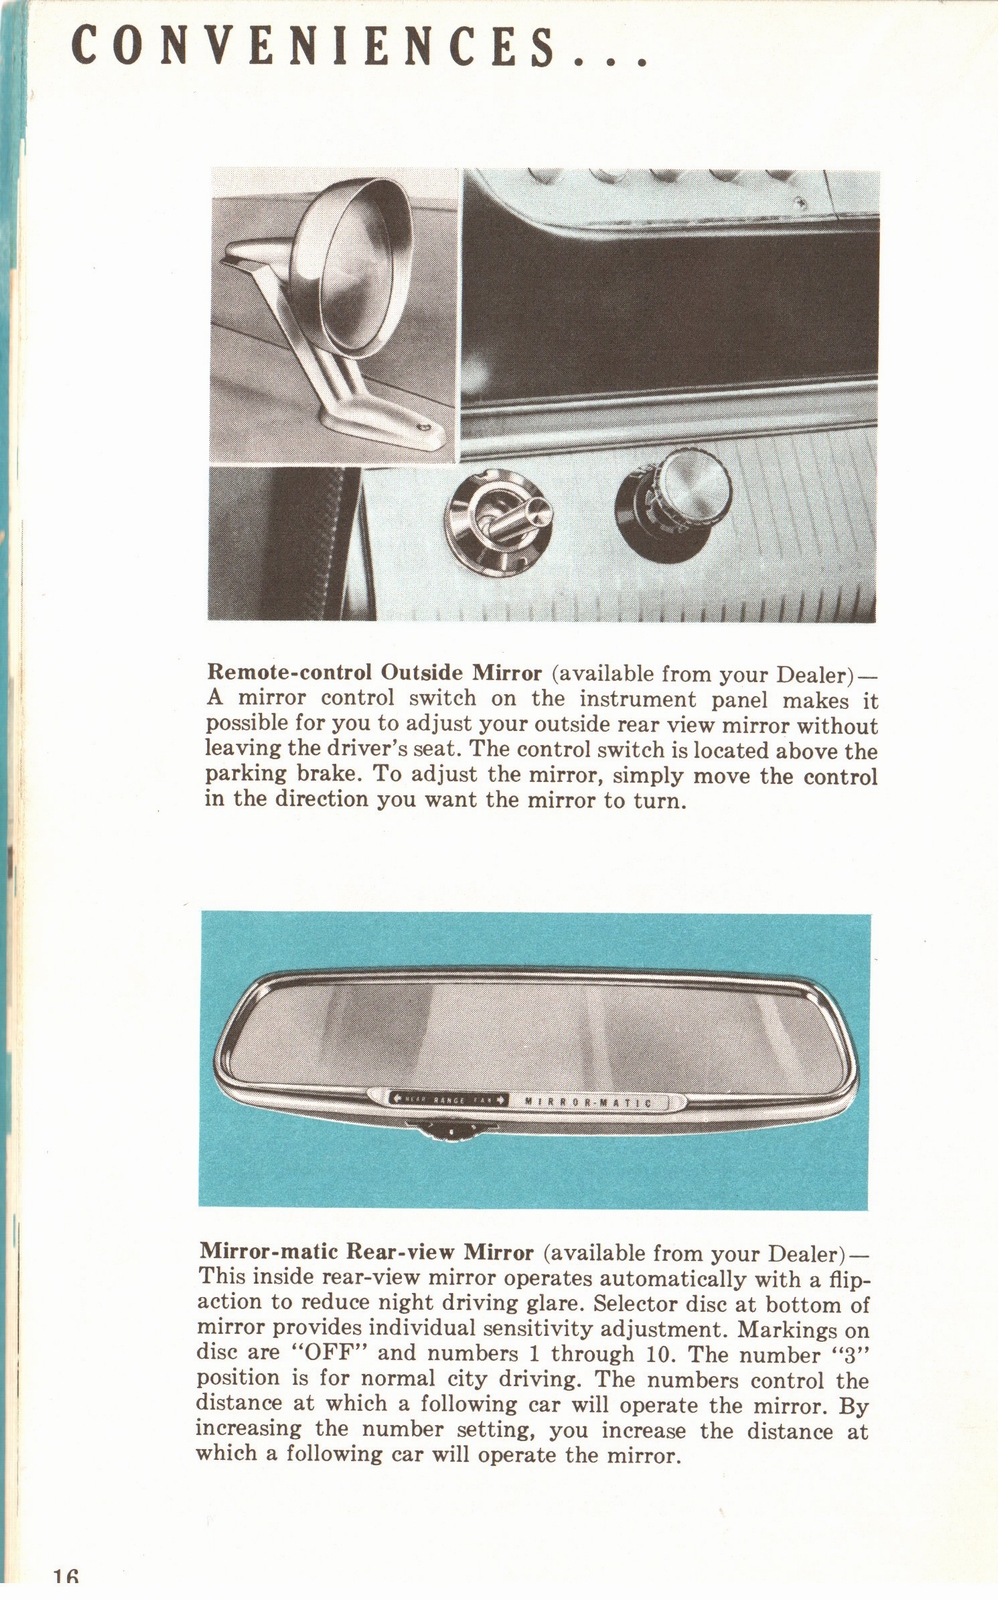 n_1960 Plymouth Owners Manual-16.jpg